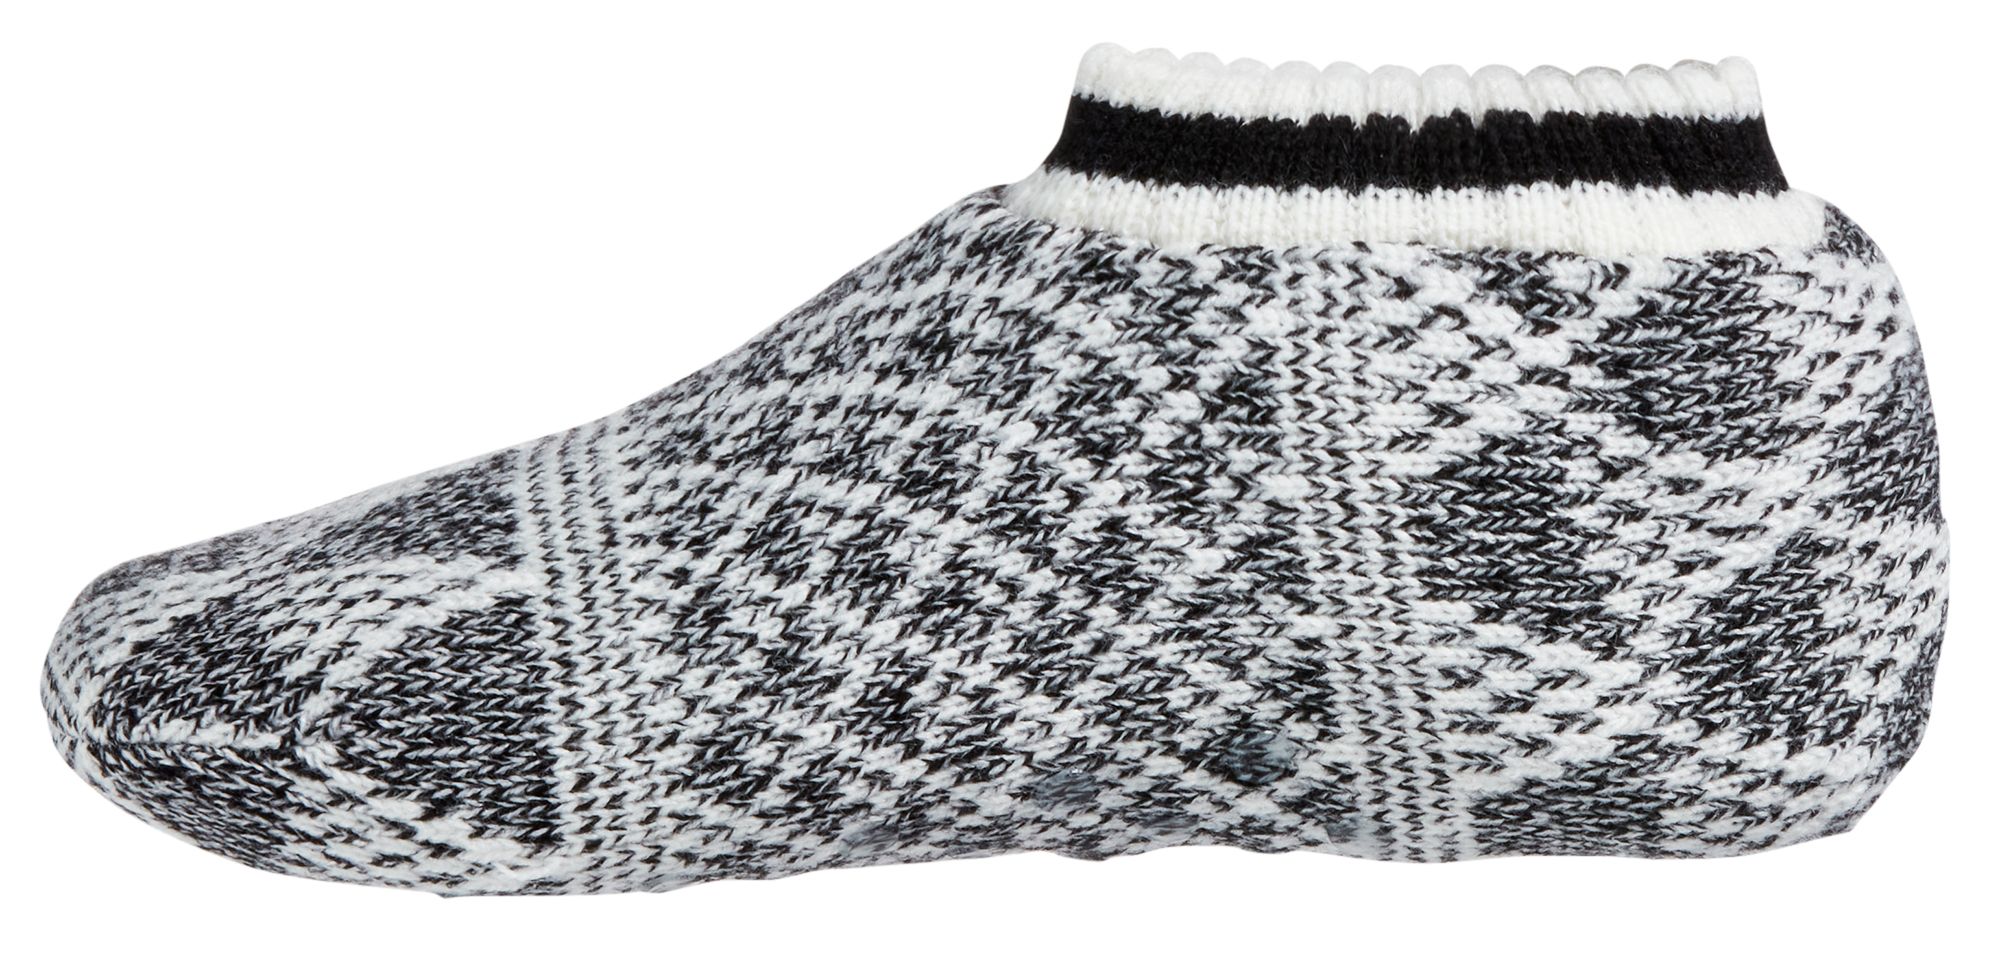 Northeast Outfitters Women's Cozy Cabin Birdseye Diamond Slipper Socks